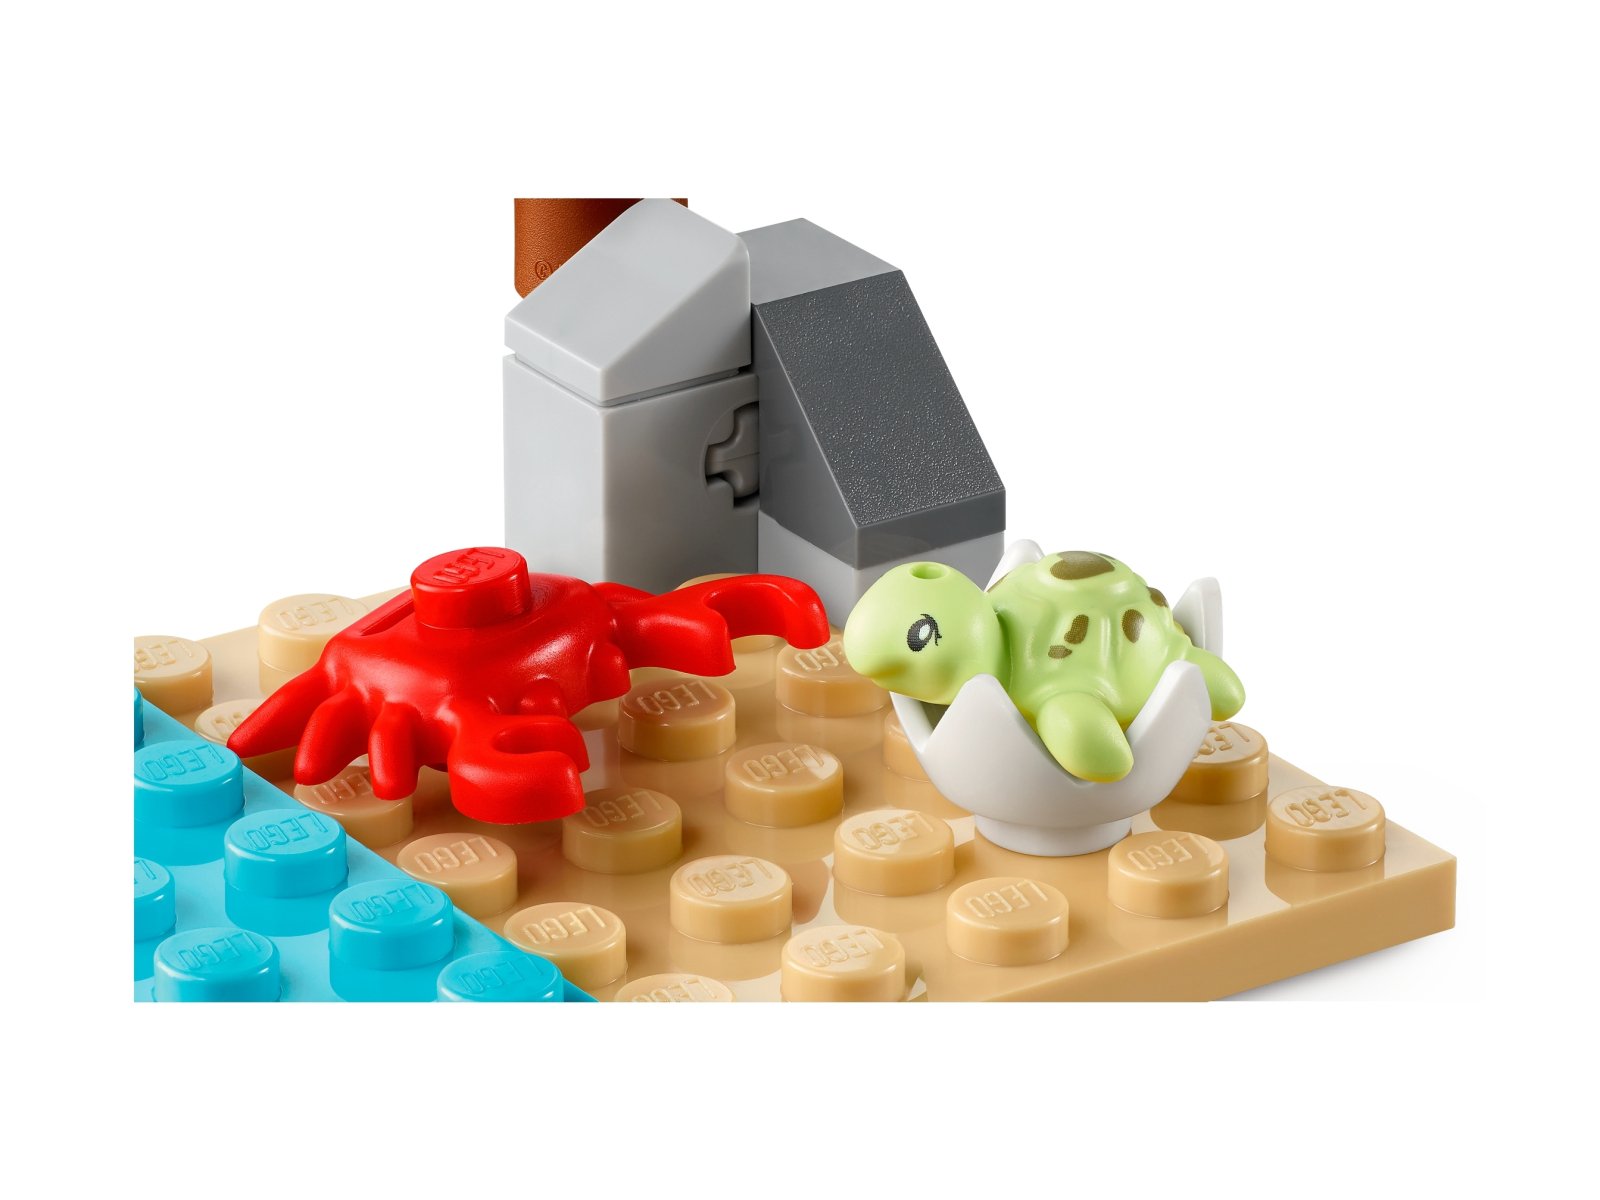 LEGO 41697 Friends Pojazd do ratowania żółwi